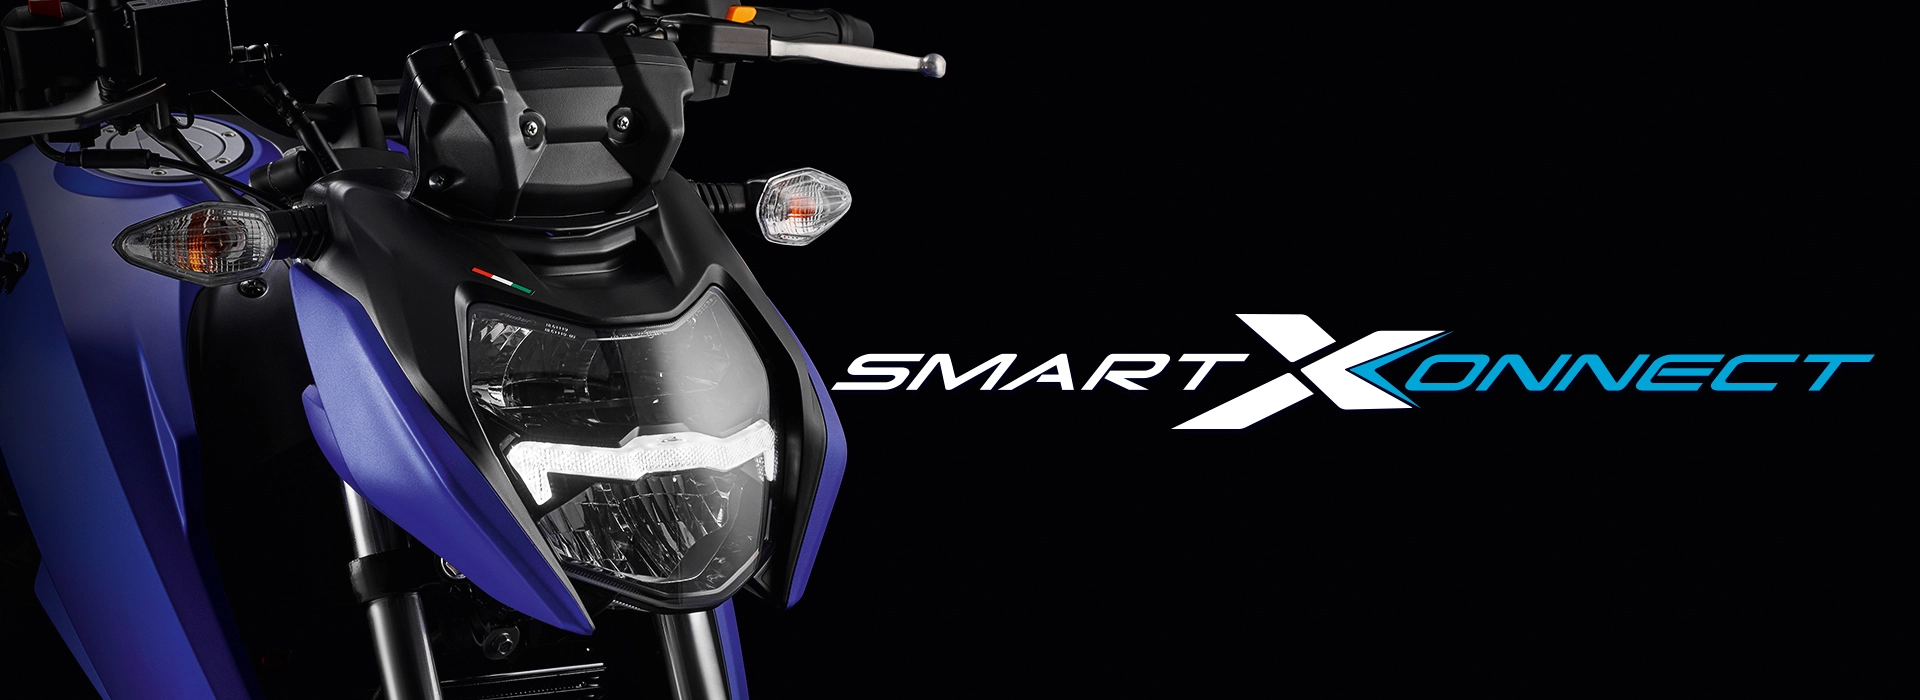 Evolución de las motos: TVS y su tecnología SmartXConnect